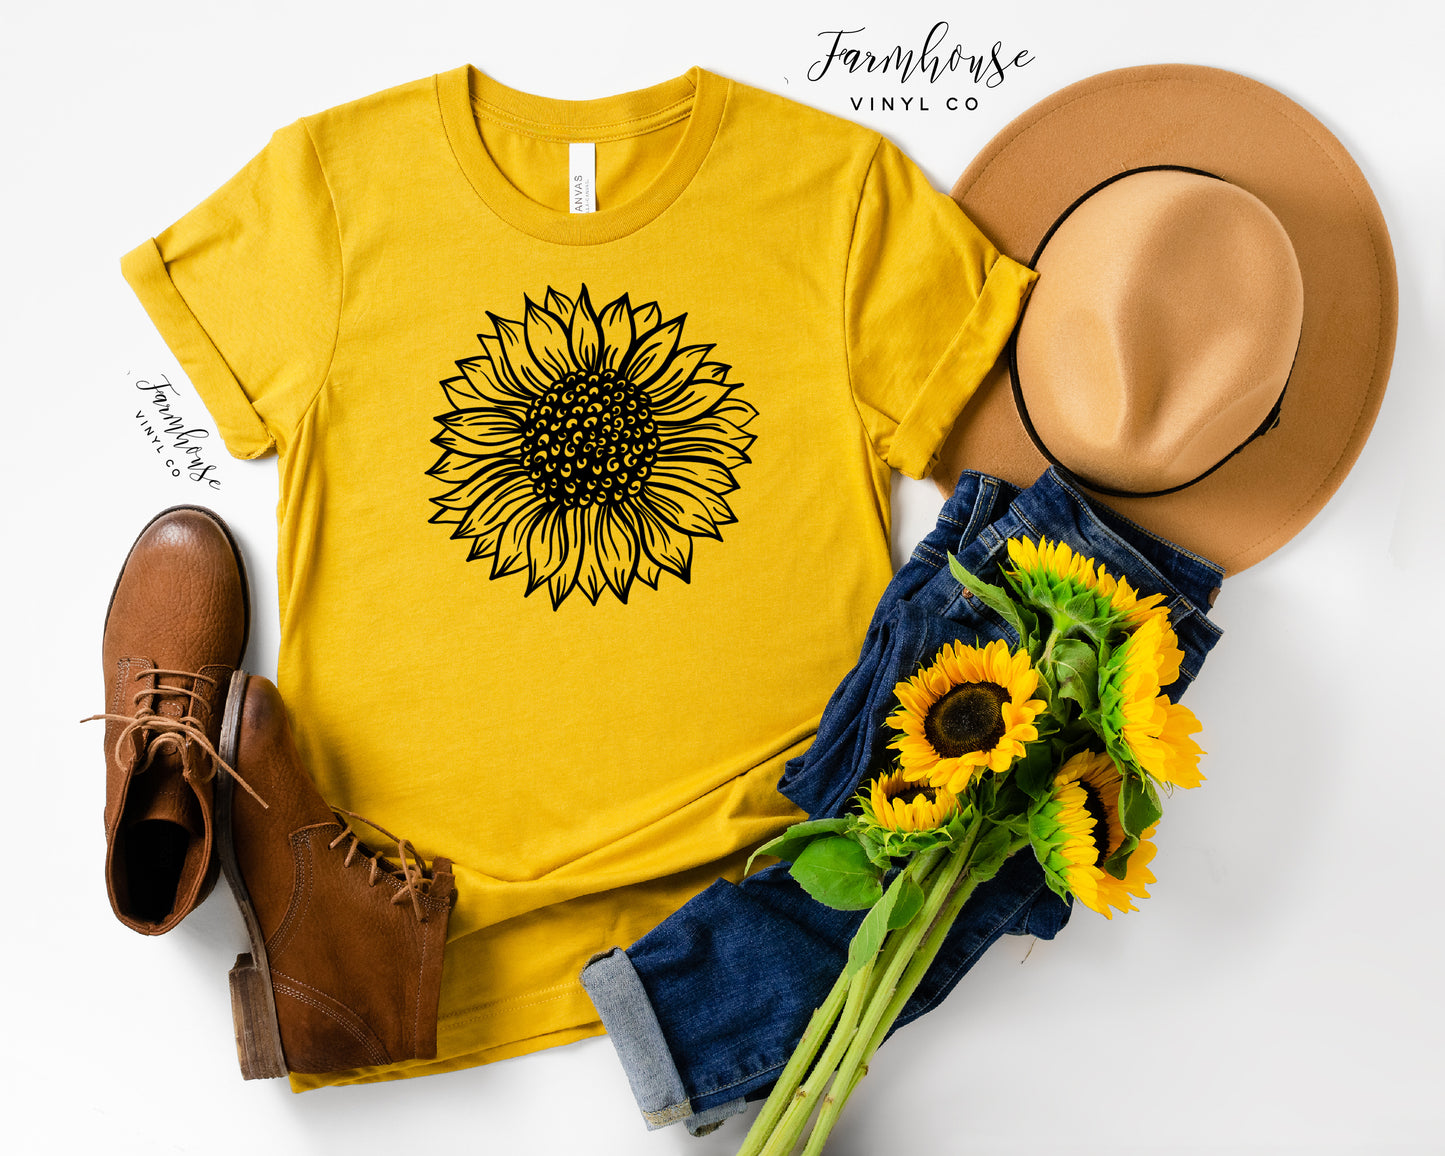 Sunflower Shirt - Farmhouse Vinyl Co